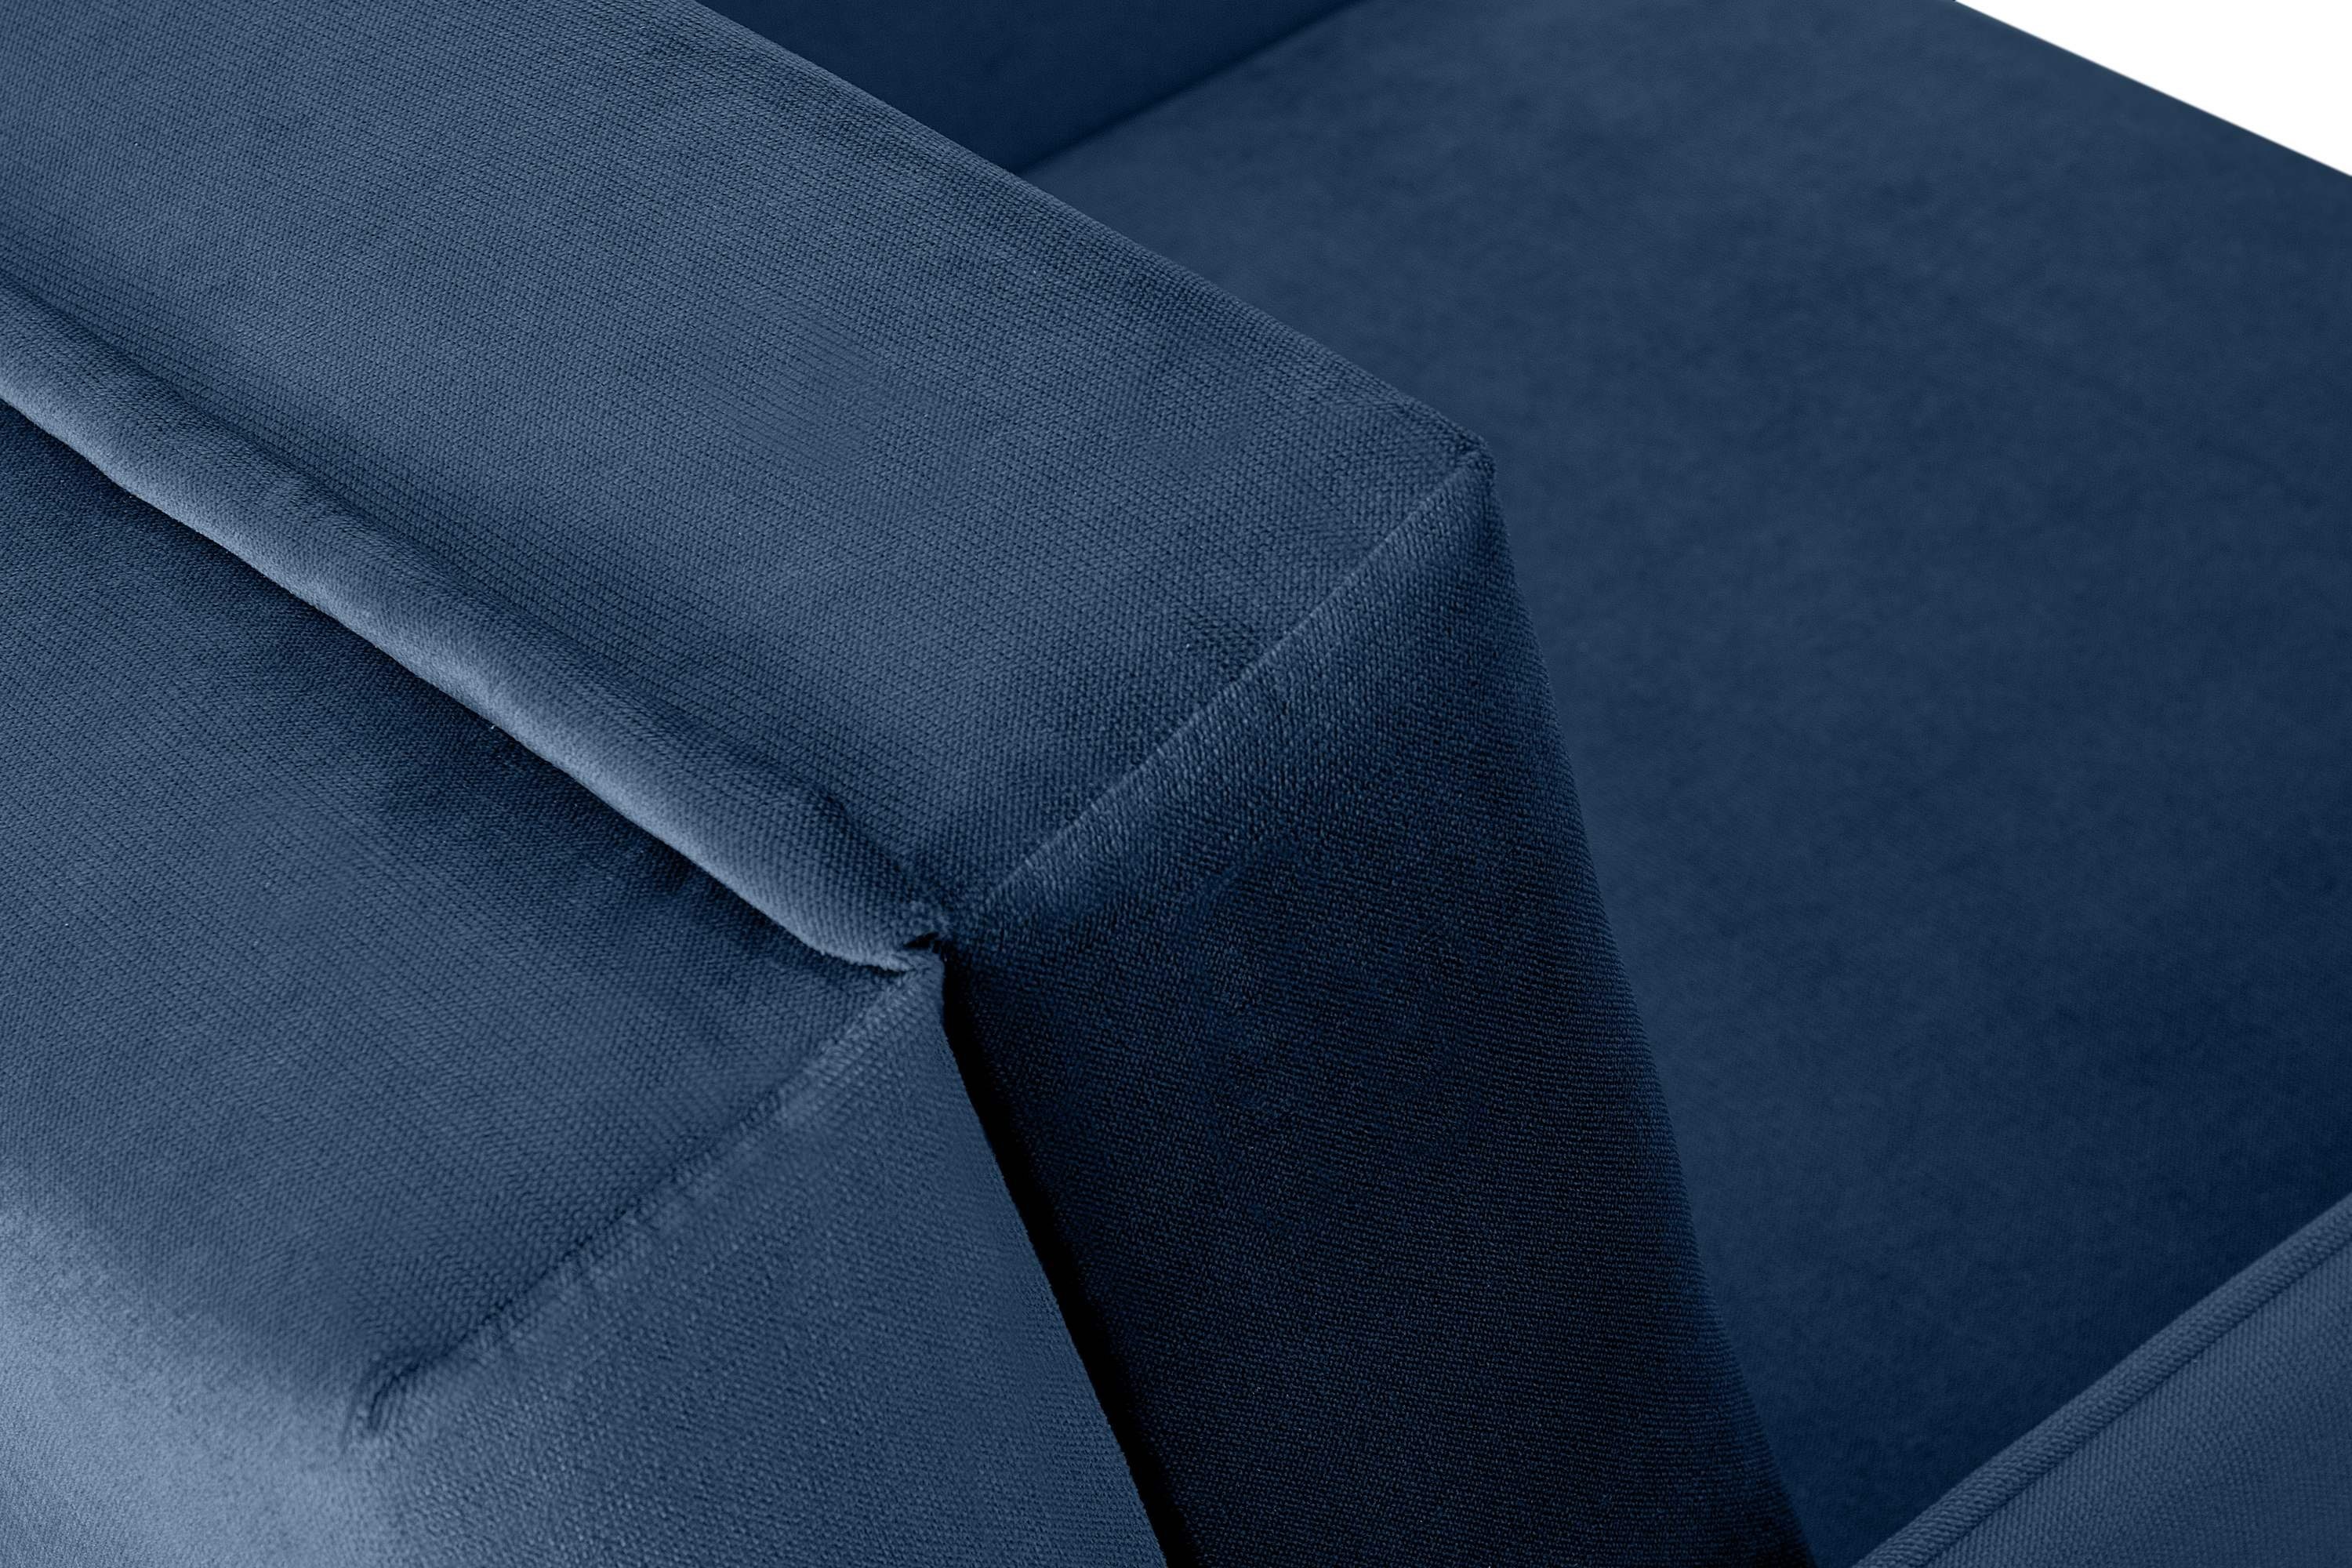 Konsimo Sessel PEDATU Liegesessel, marineblau mit Bettkasten, und mit Schlaffunktion, langlebiges schmutzabweisendes